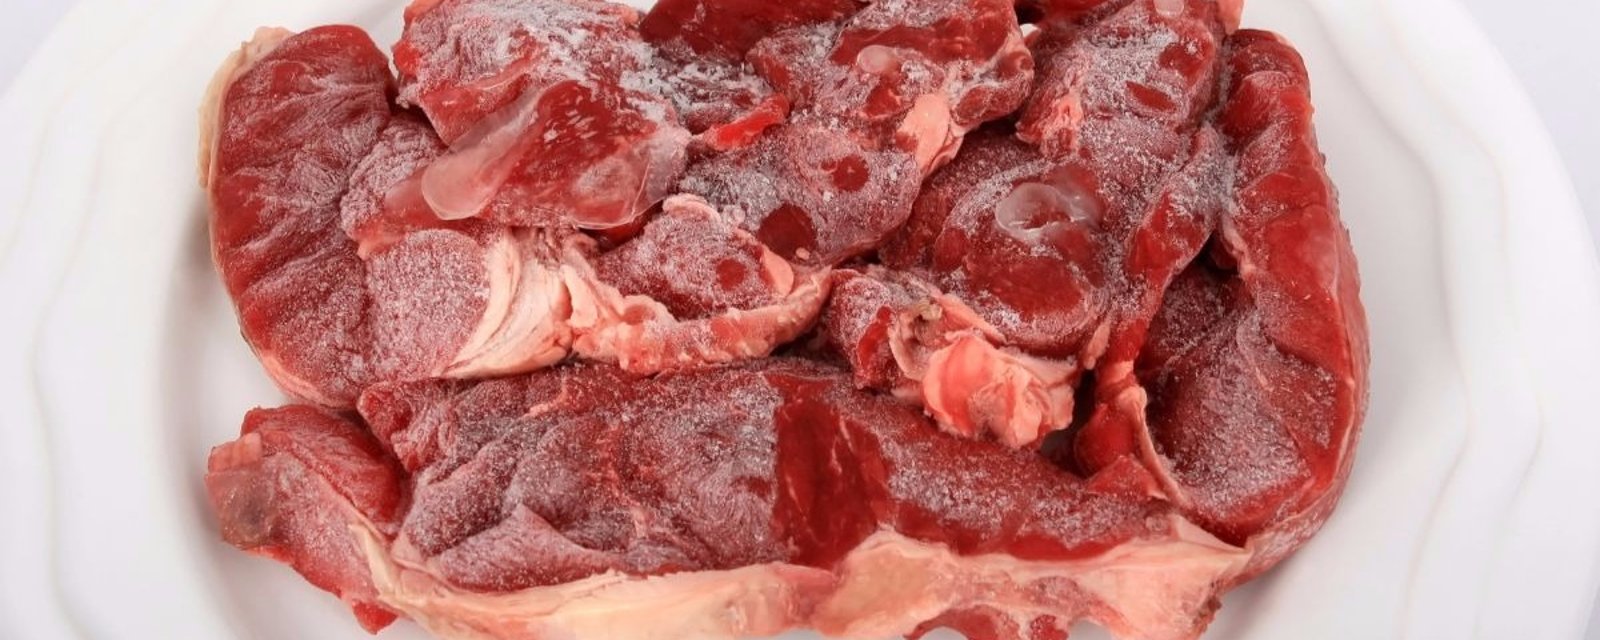 Dégelez votre viande en quelques minutes seulement avec cette méthode sans danger